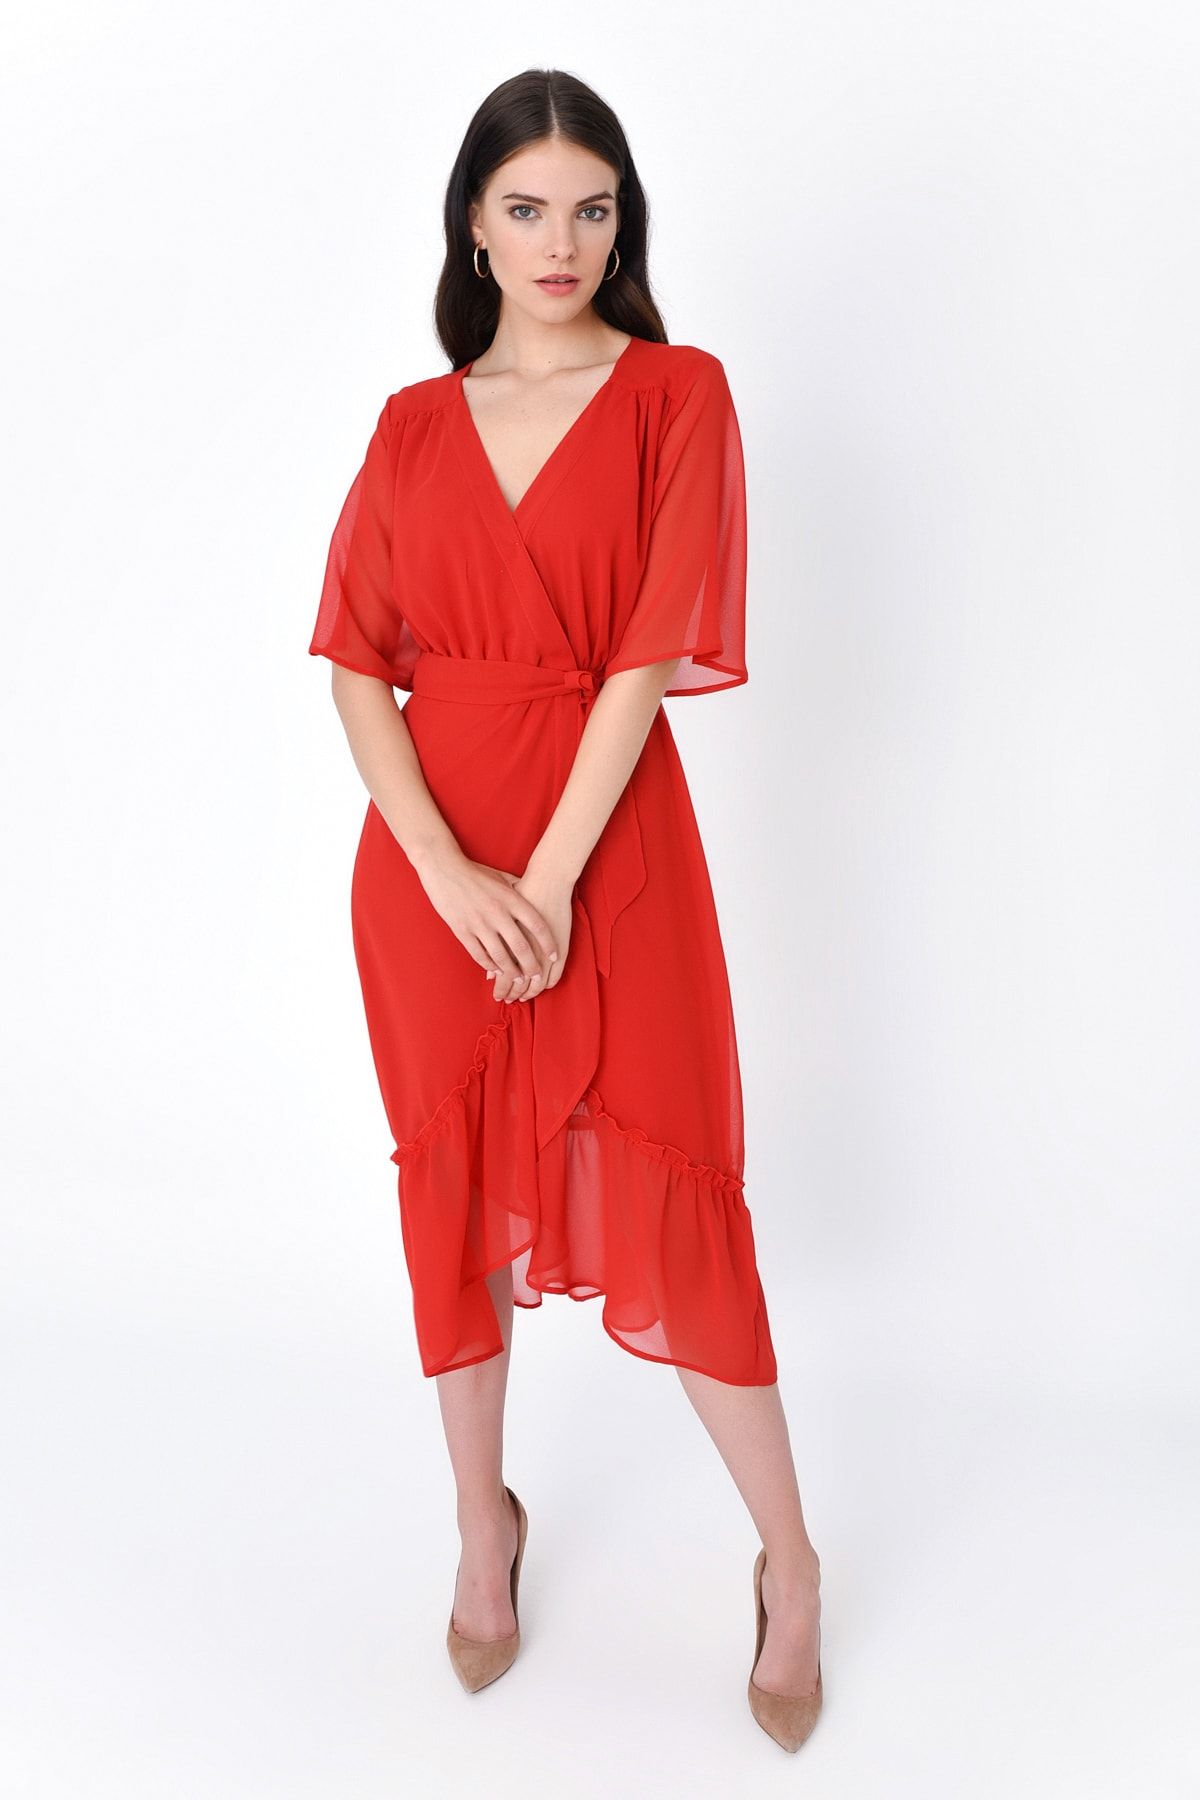 Hanna's Kadın Kırmızı Kruvaze Eteği Fırfırlı Kısa Kollu Elbise